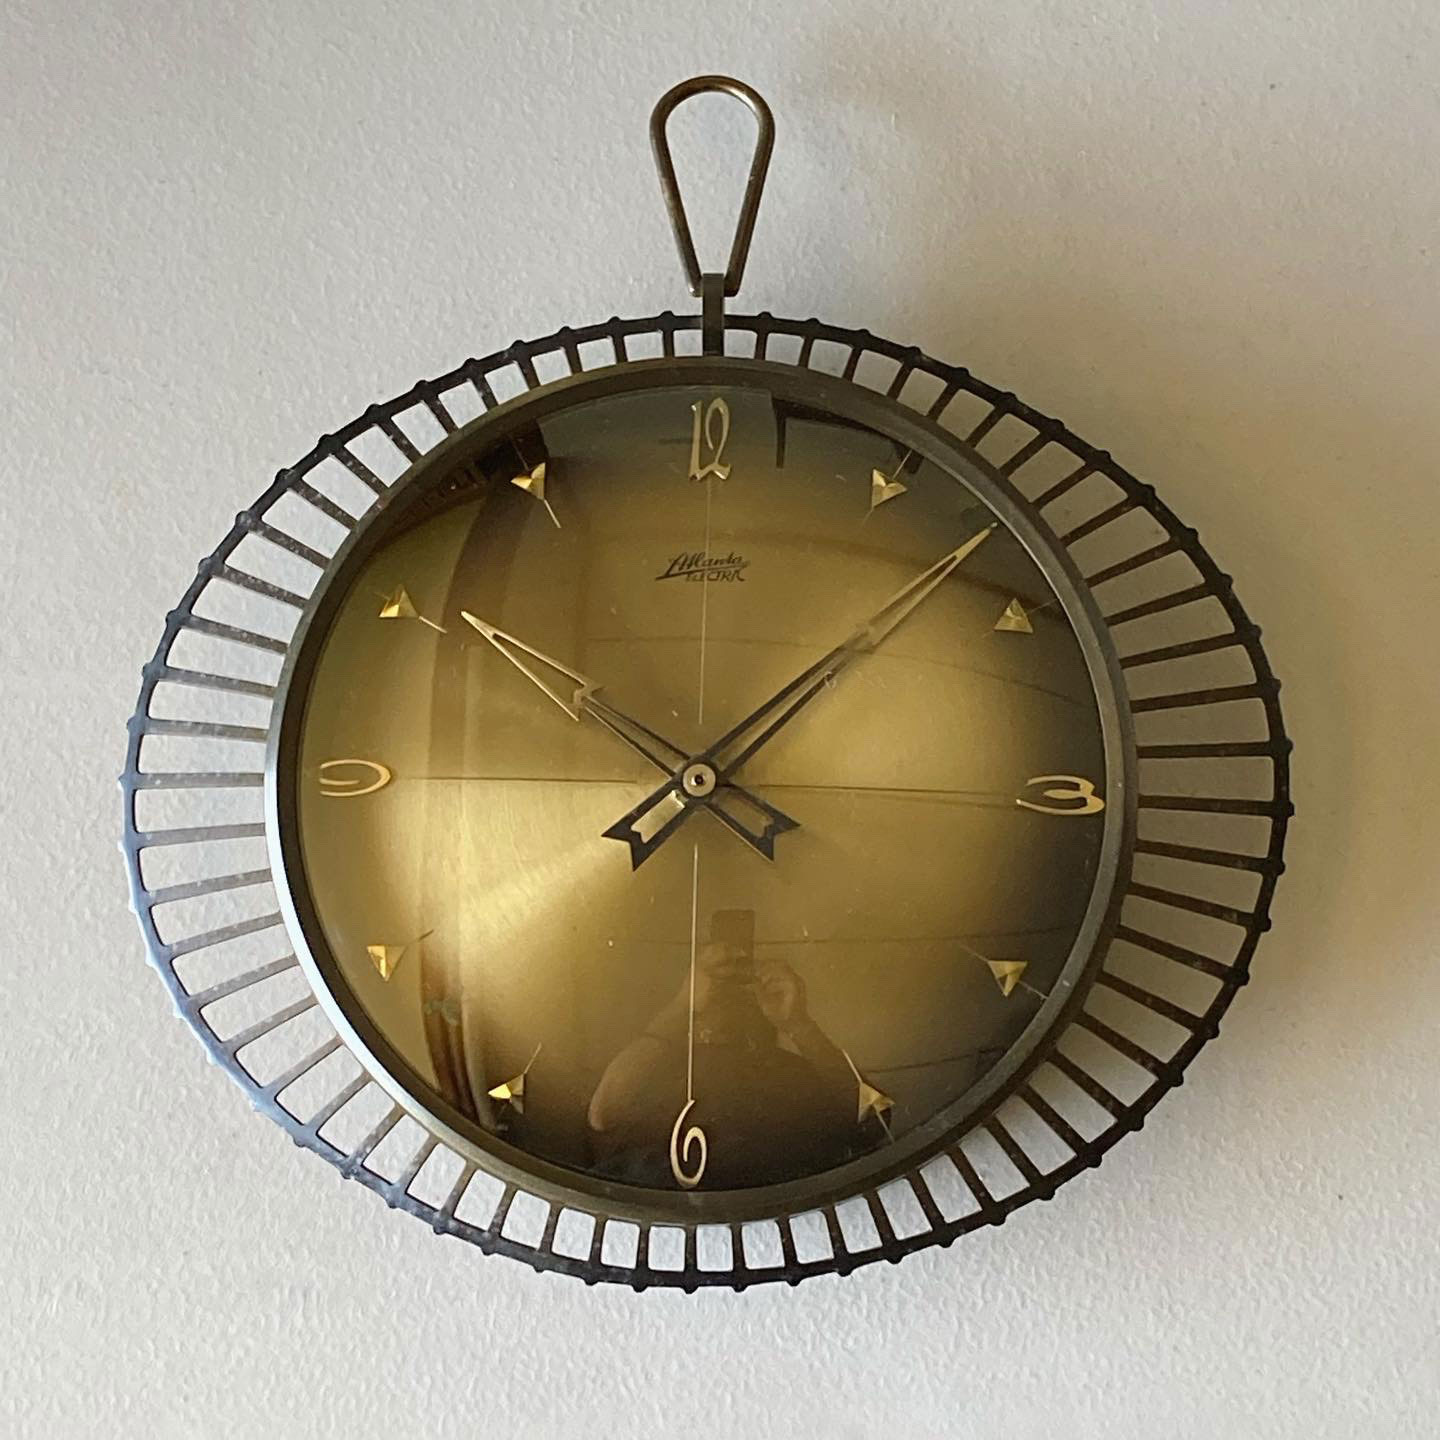 ドイツ50's ビンテージ ウォール クロック 掛け時計 ミッド